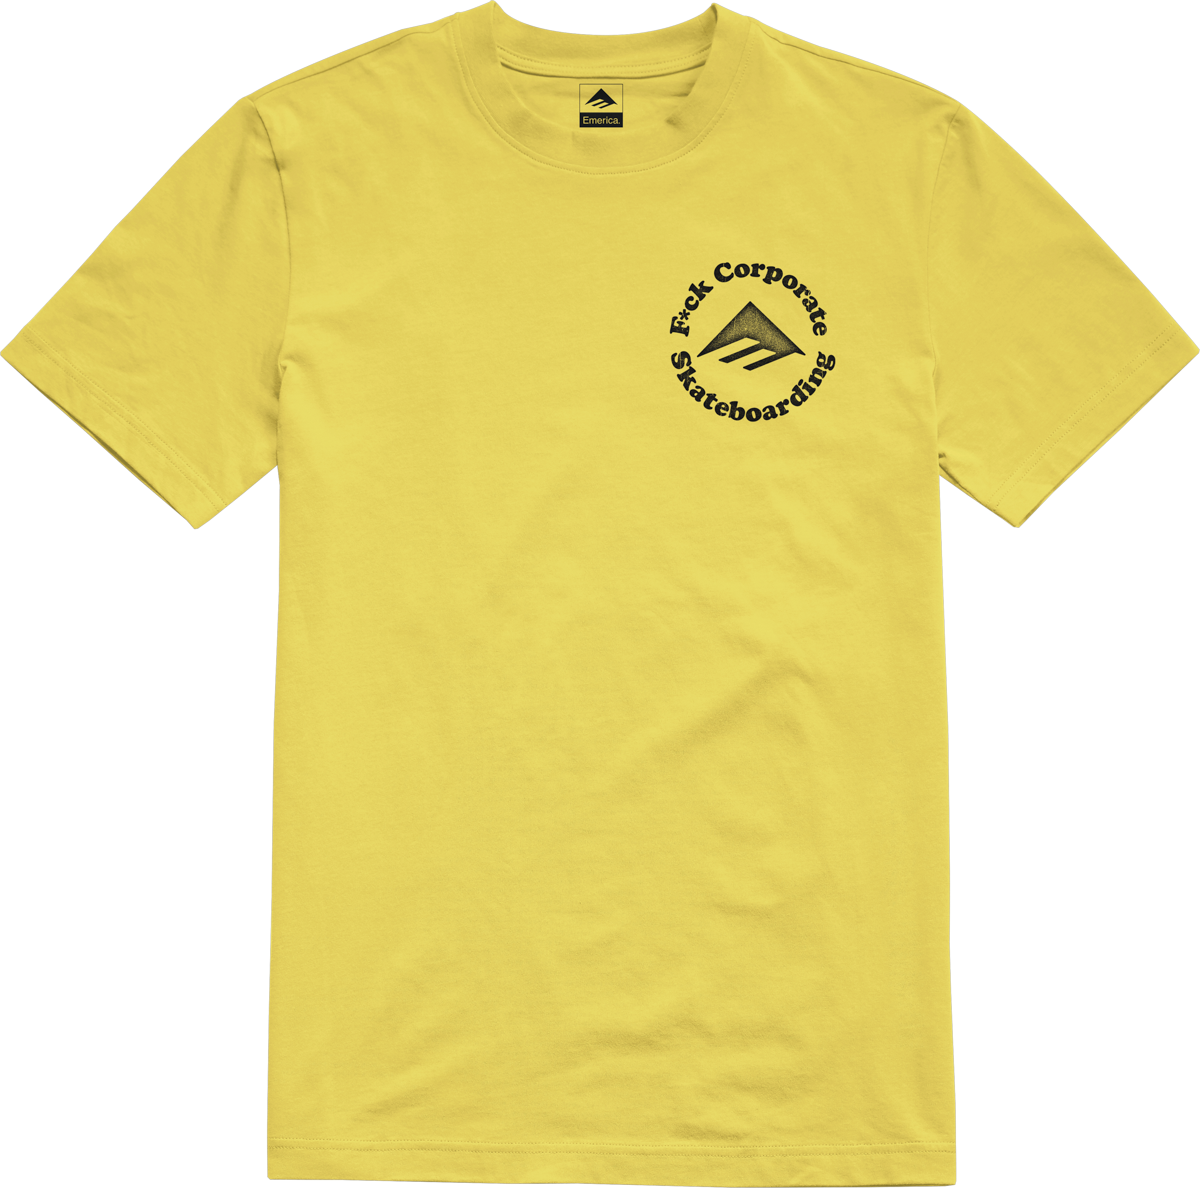 Emerica Mens Eff Corporate 2 Tee Yellow T-Shirt